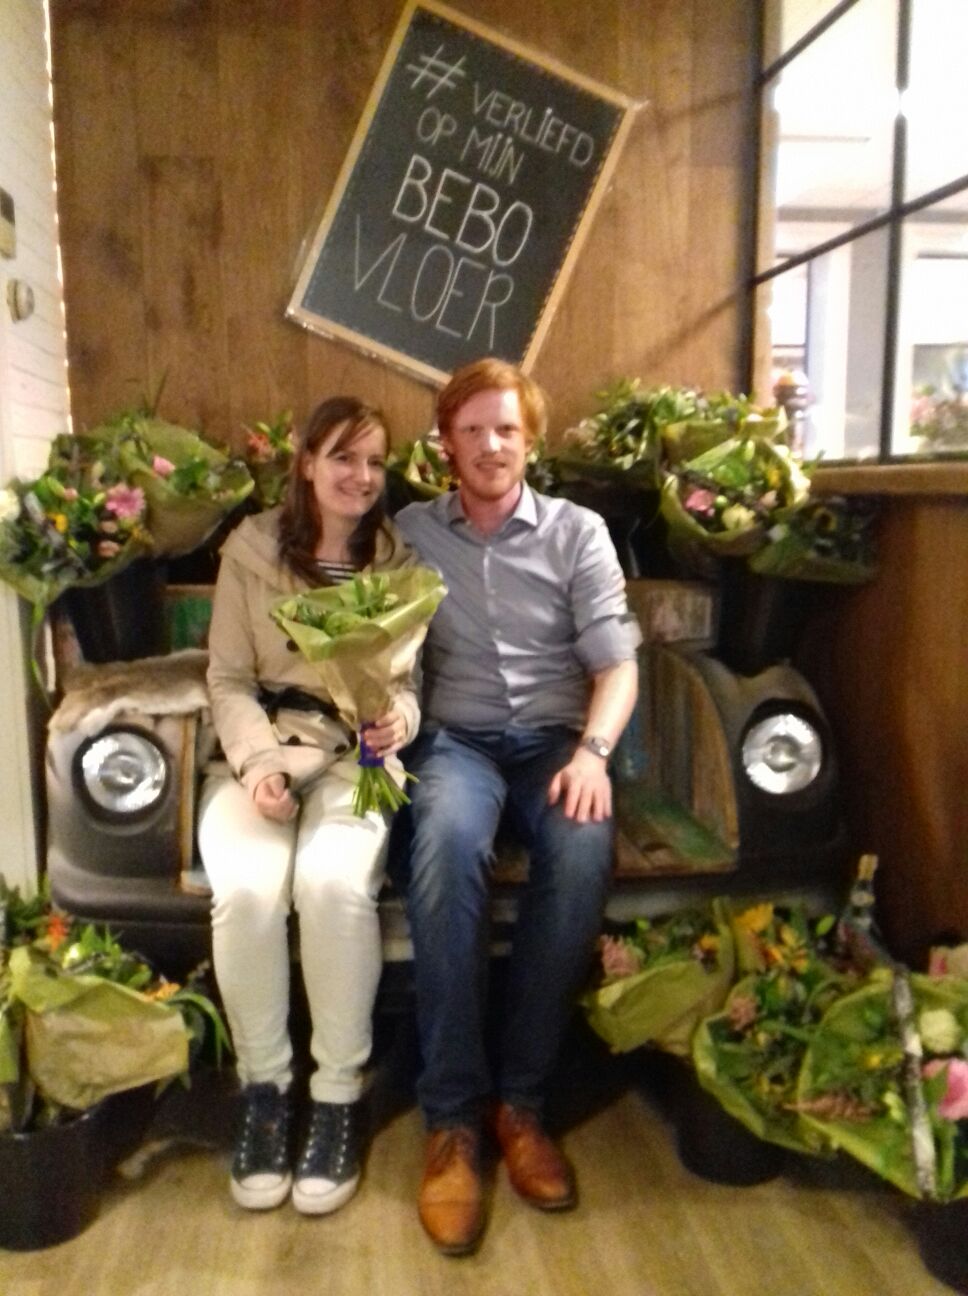 Meneer en mevrouw uit Apeldoorn geven hun huis een nieuwe styl met de Bebo stoelen.